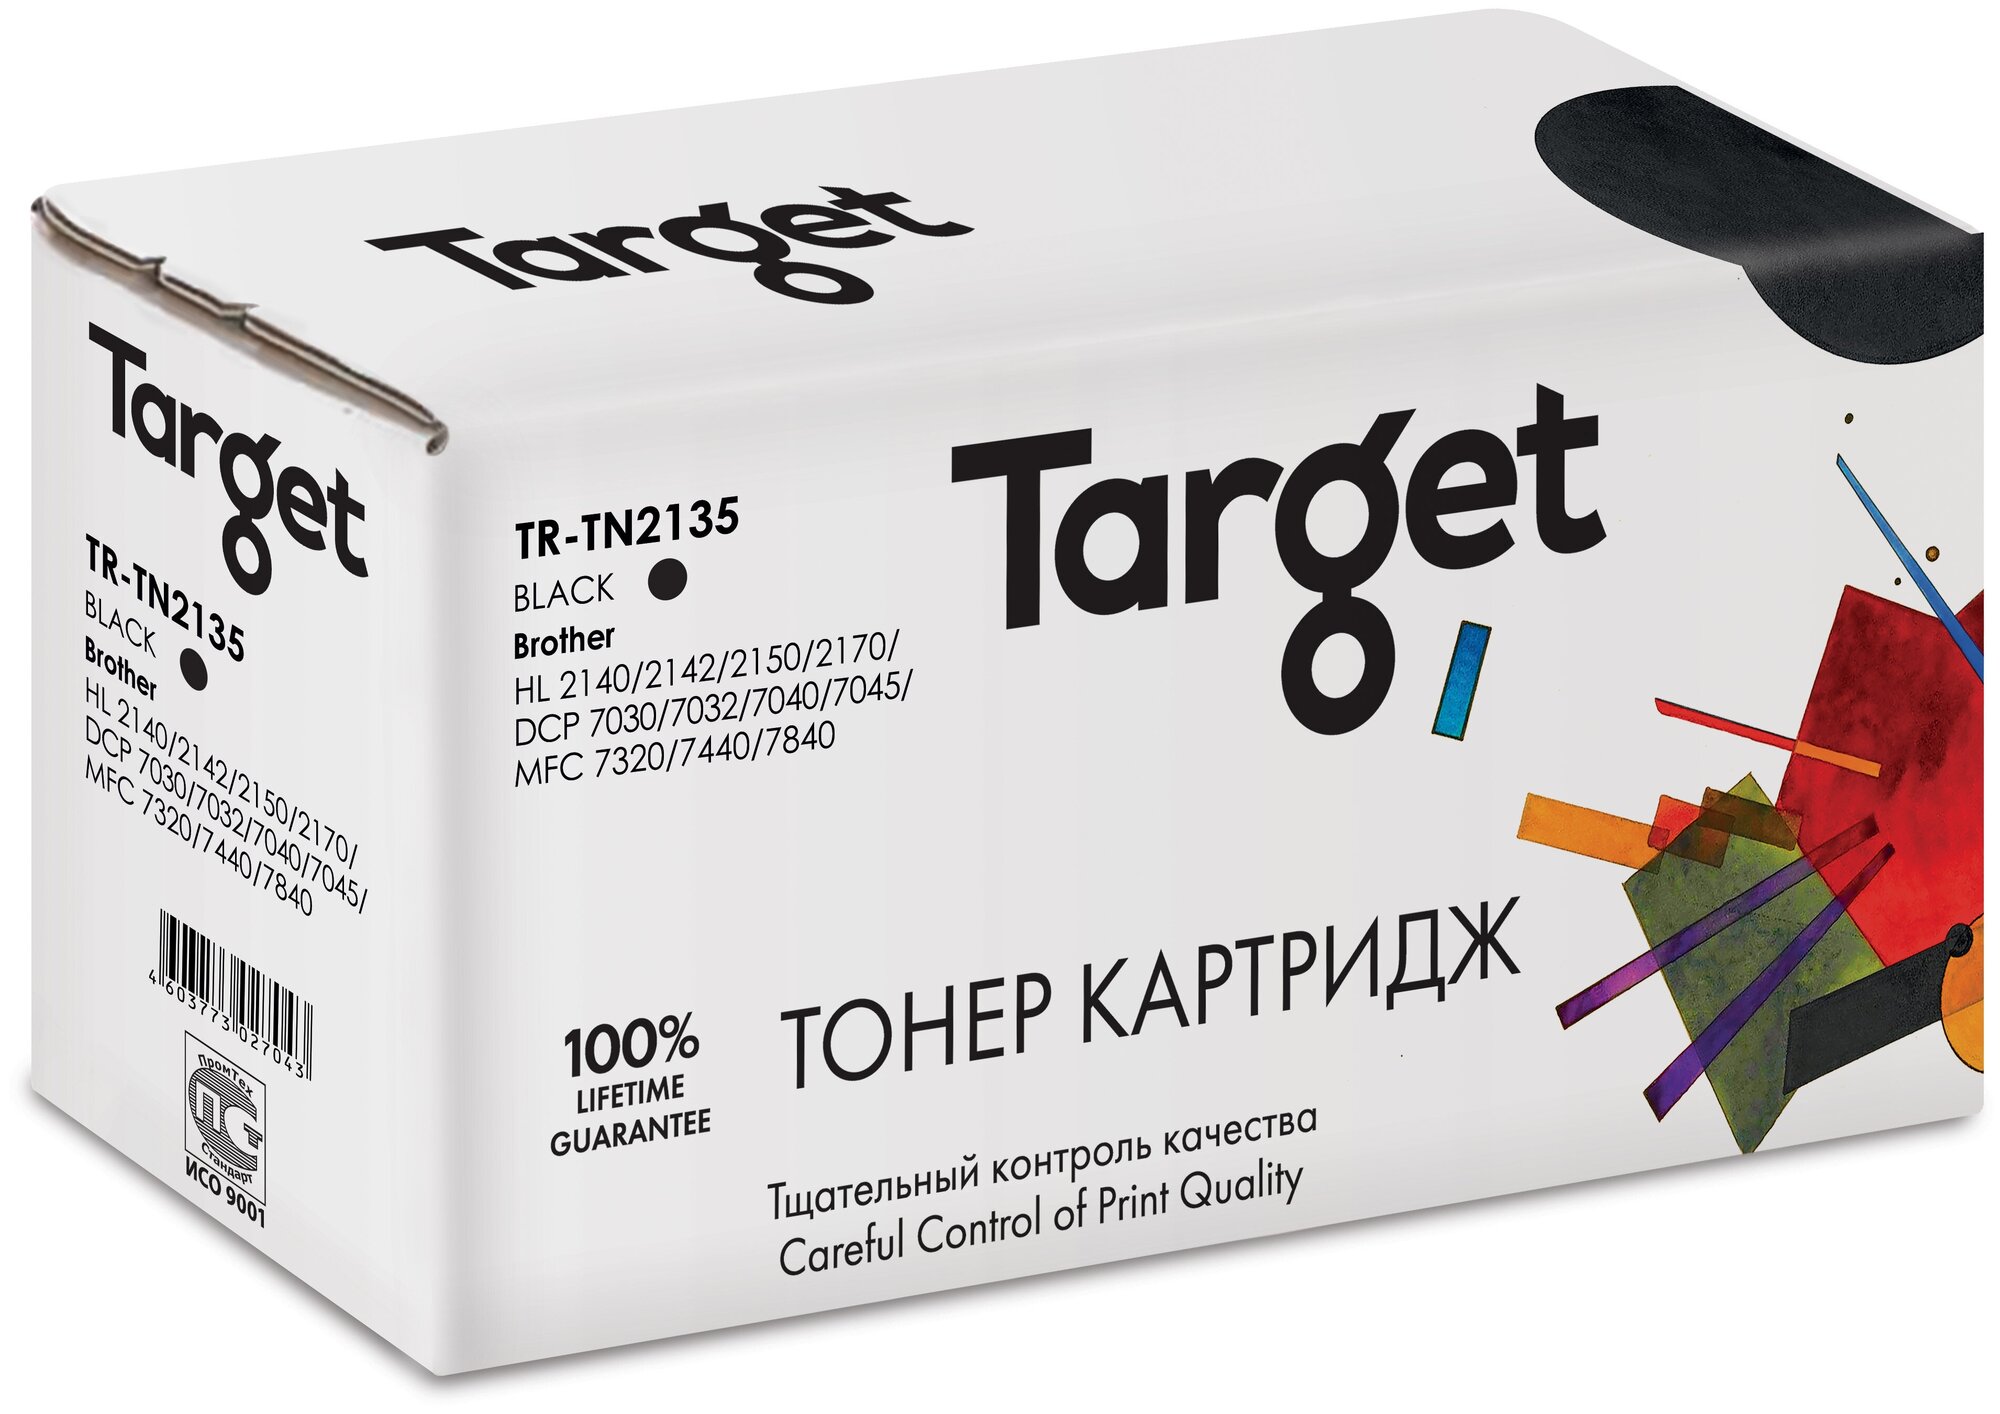 Картридж Target TN2135, черный, для лазерного принтера, совместимый